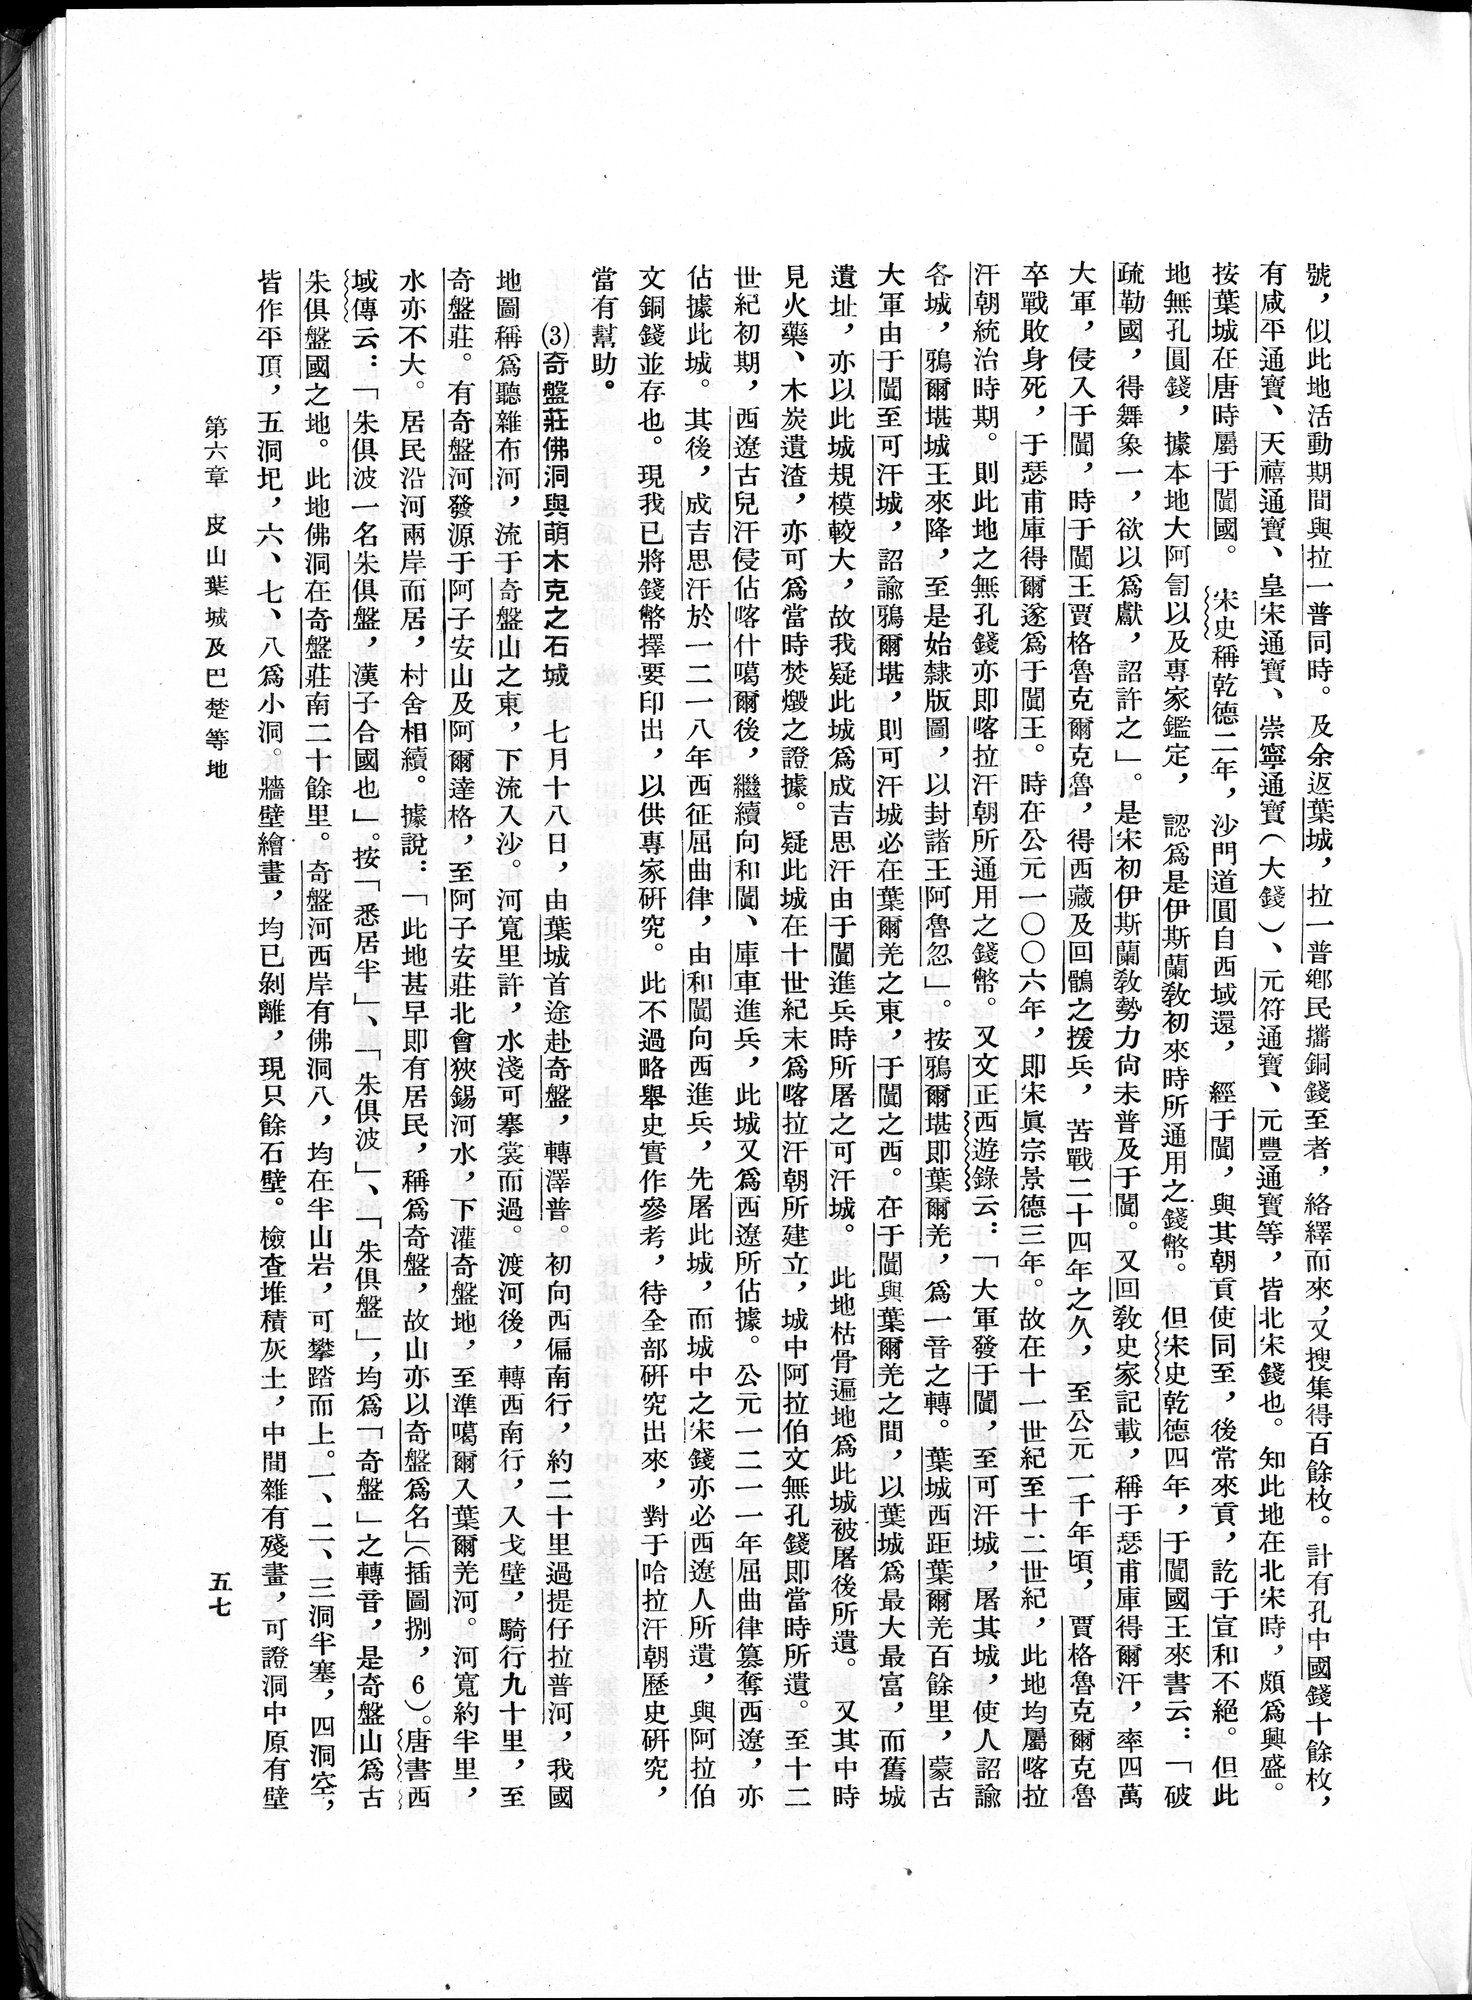 塔里木盆地考古記 : vol.1 / Page 81 (Grayscale High Resolution Image)